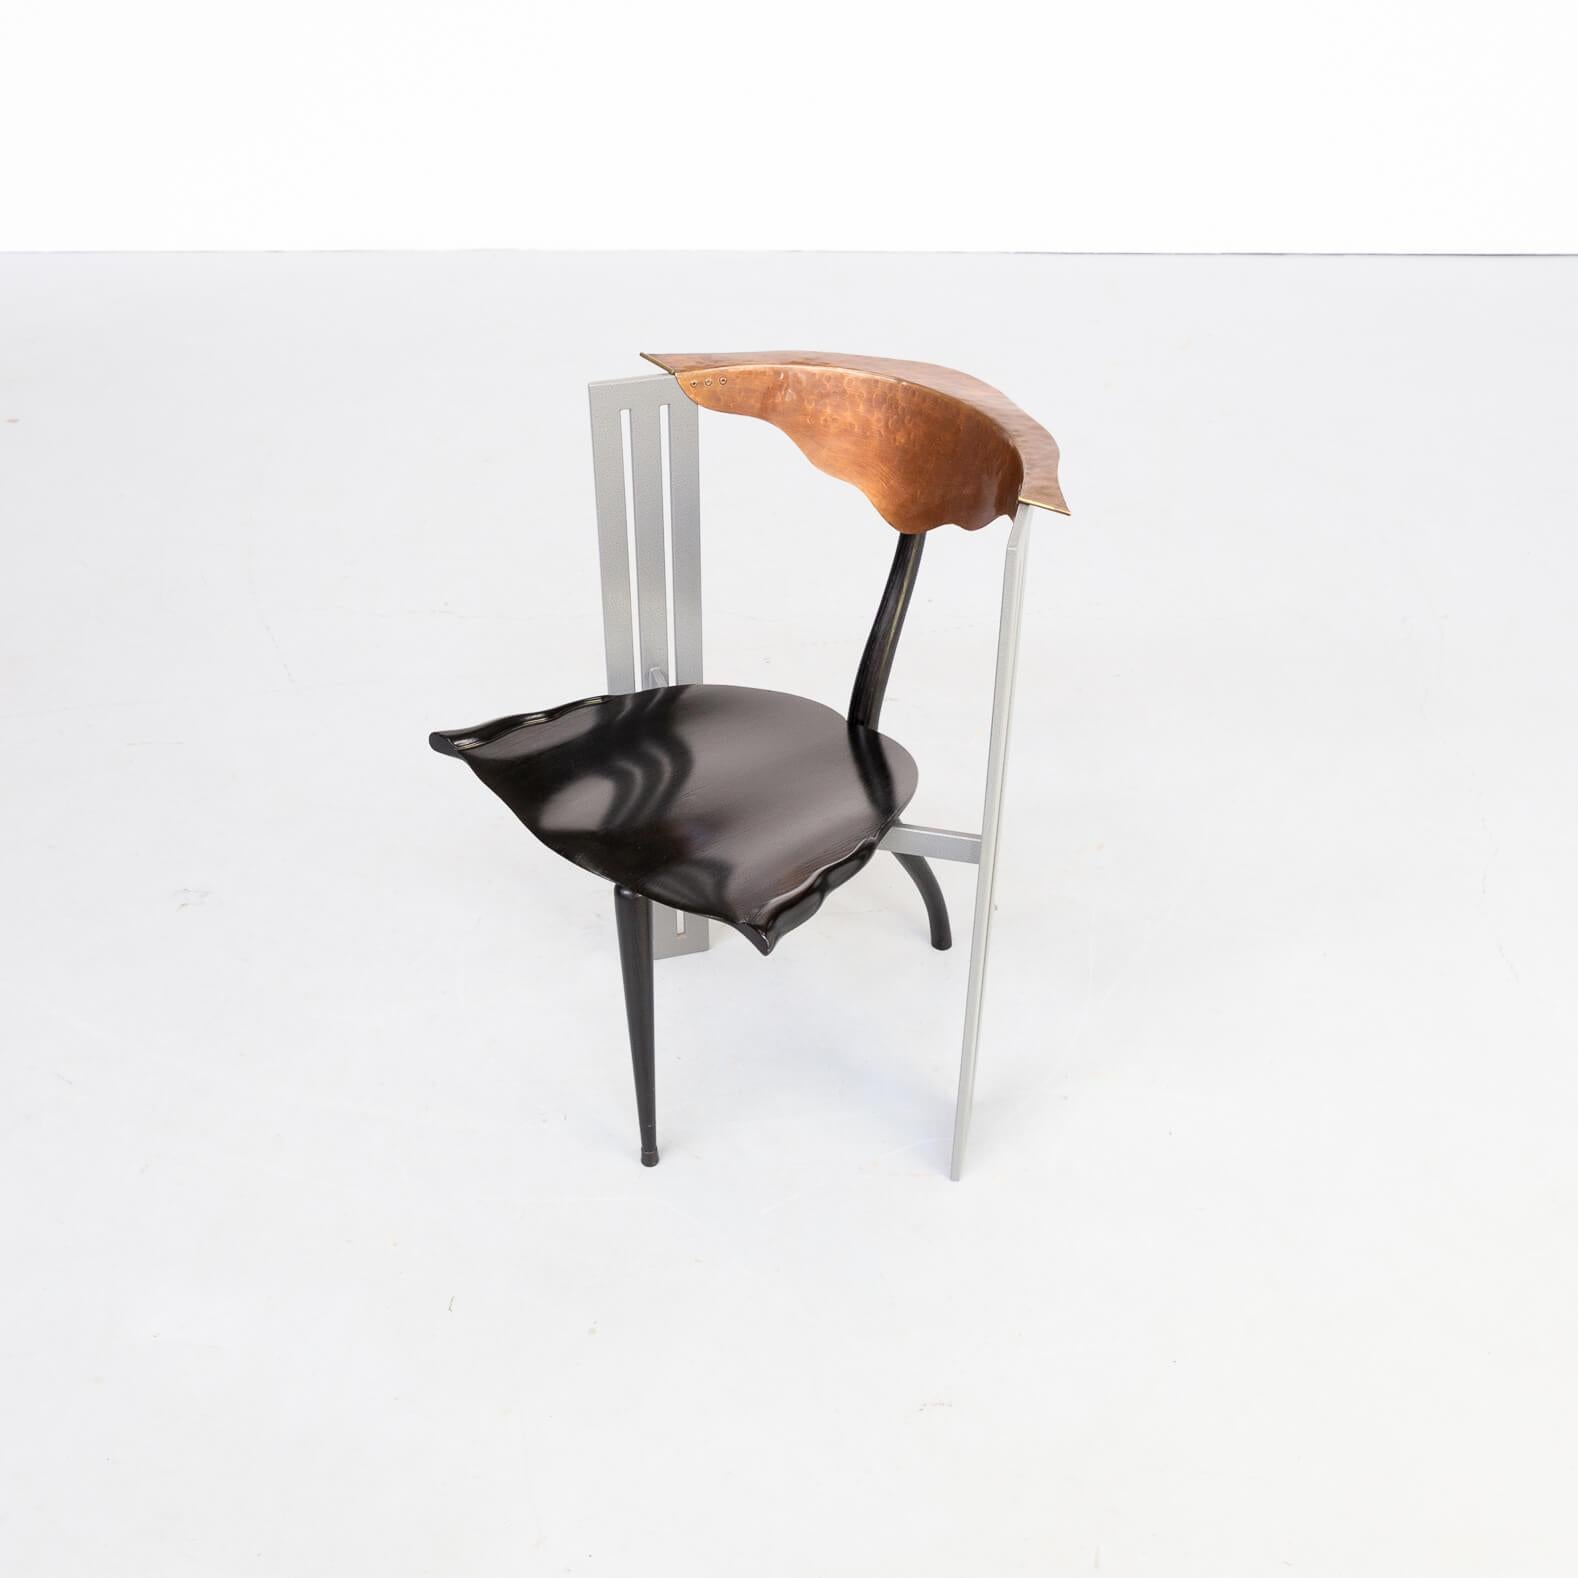 80s Borek Sipek ‘Ota Otanek’ Chair In Good Condition For Sale In Amstelveen, Noord